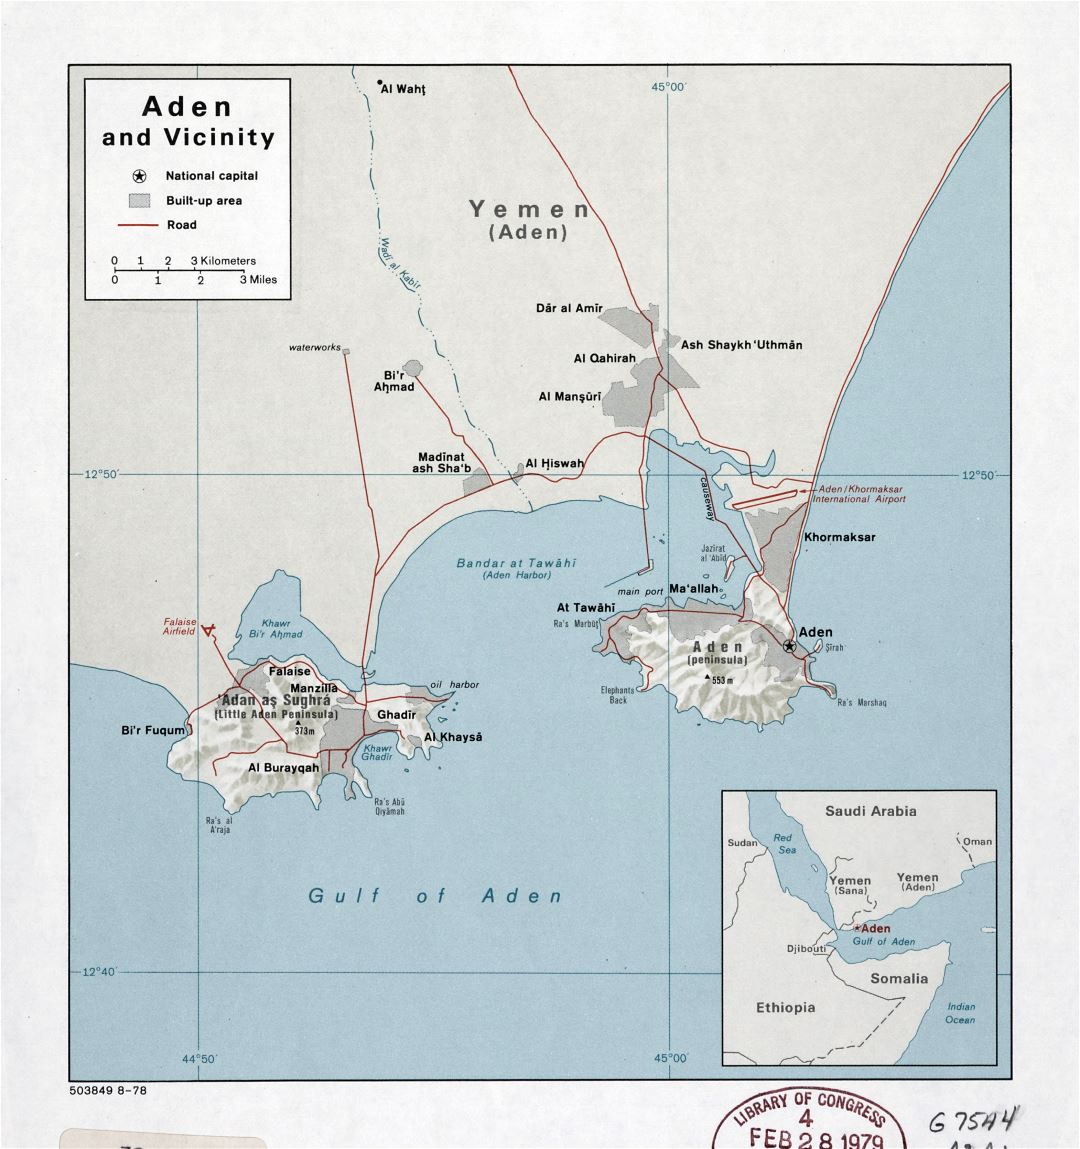 Grande detallado mapa de Adén y alrededores con relieve y carreteras - 1978